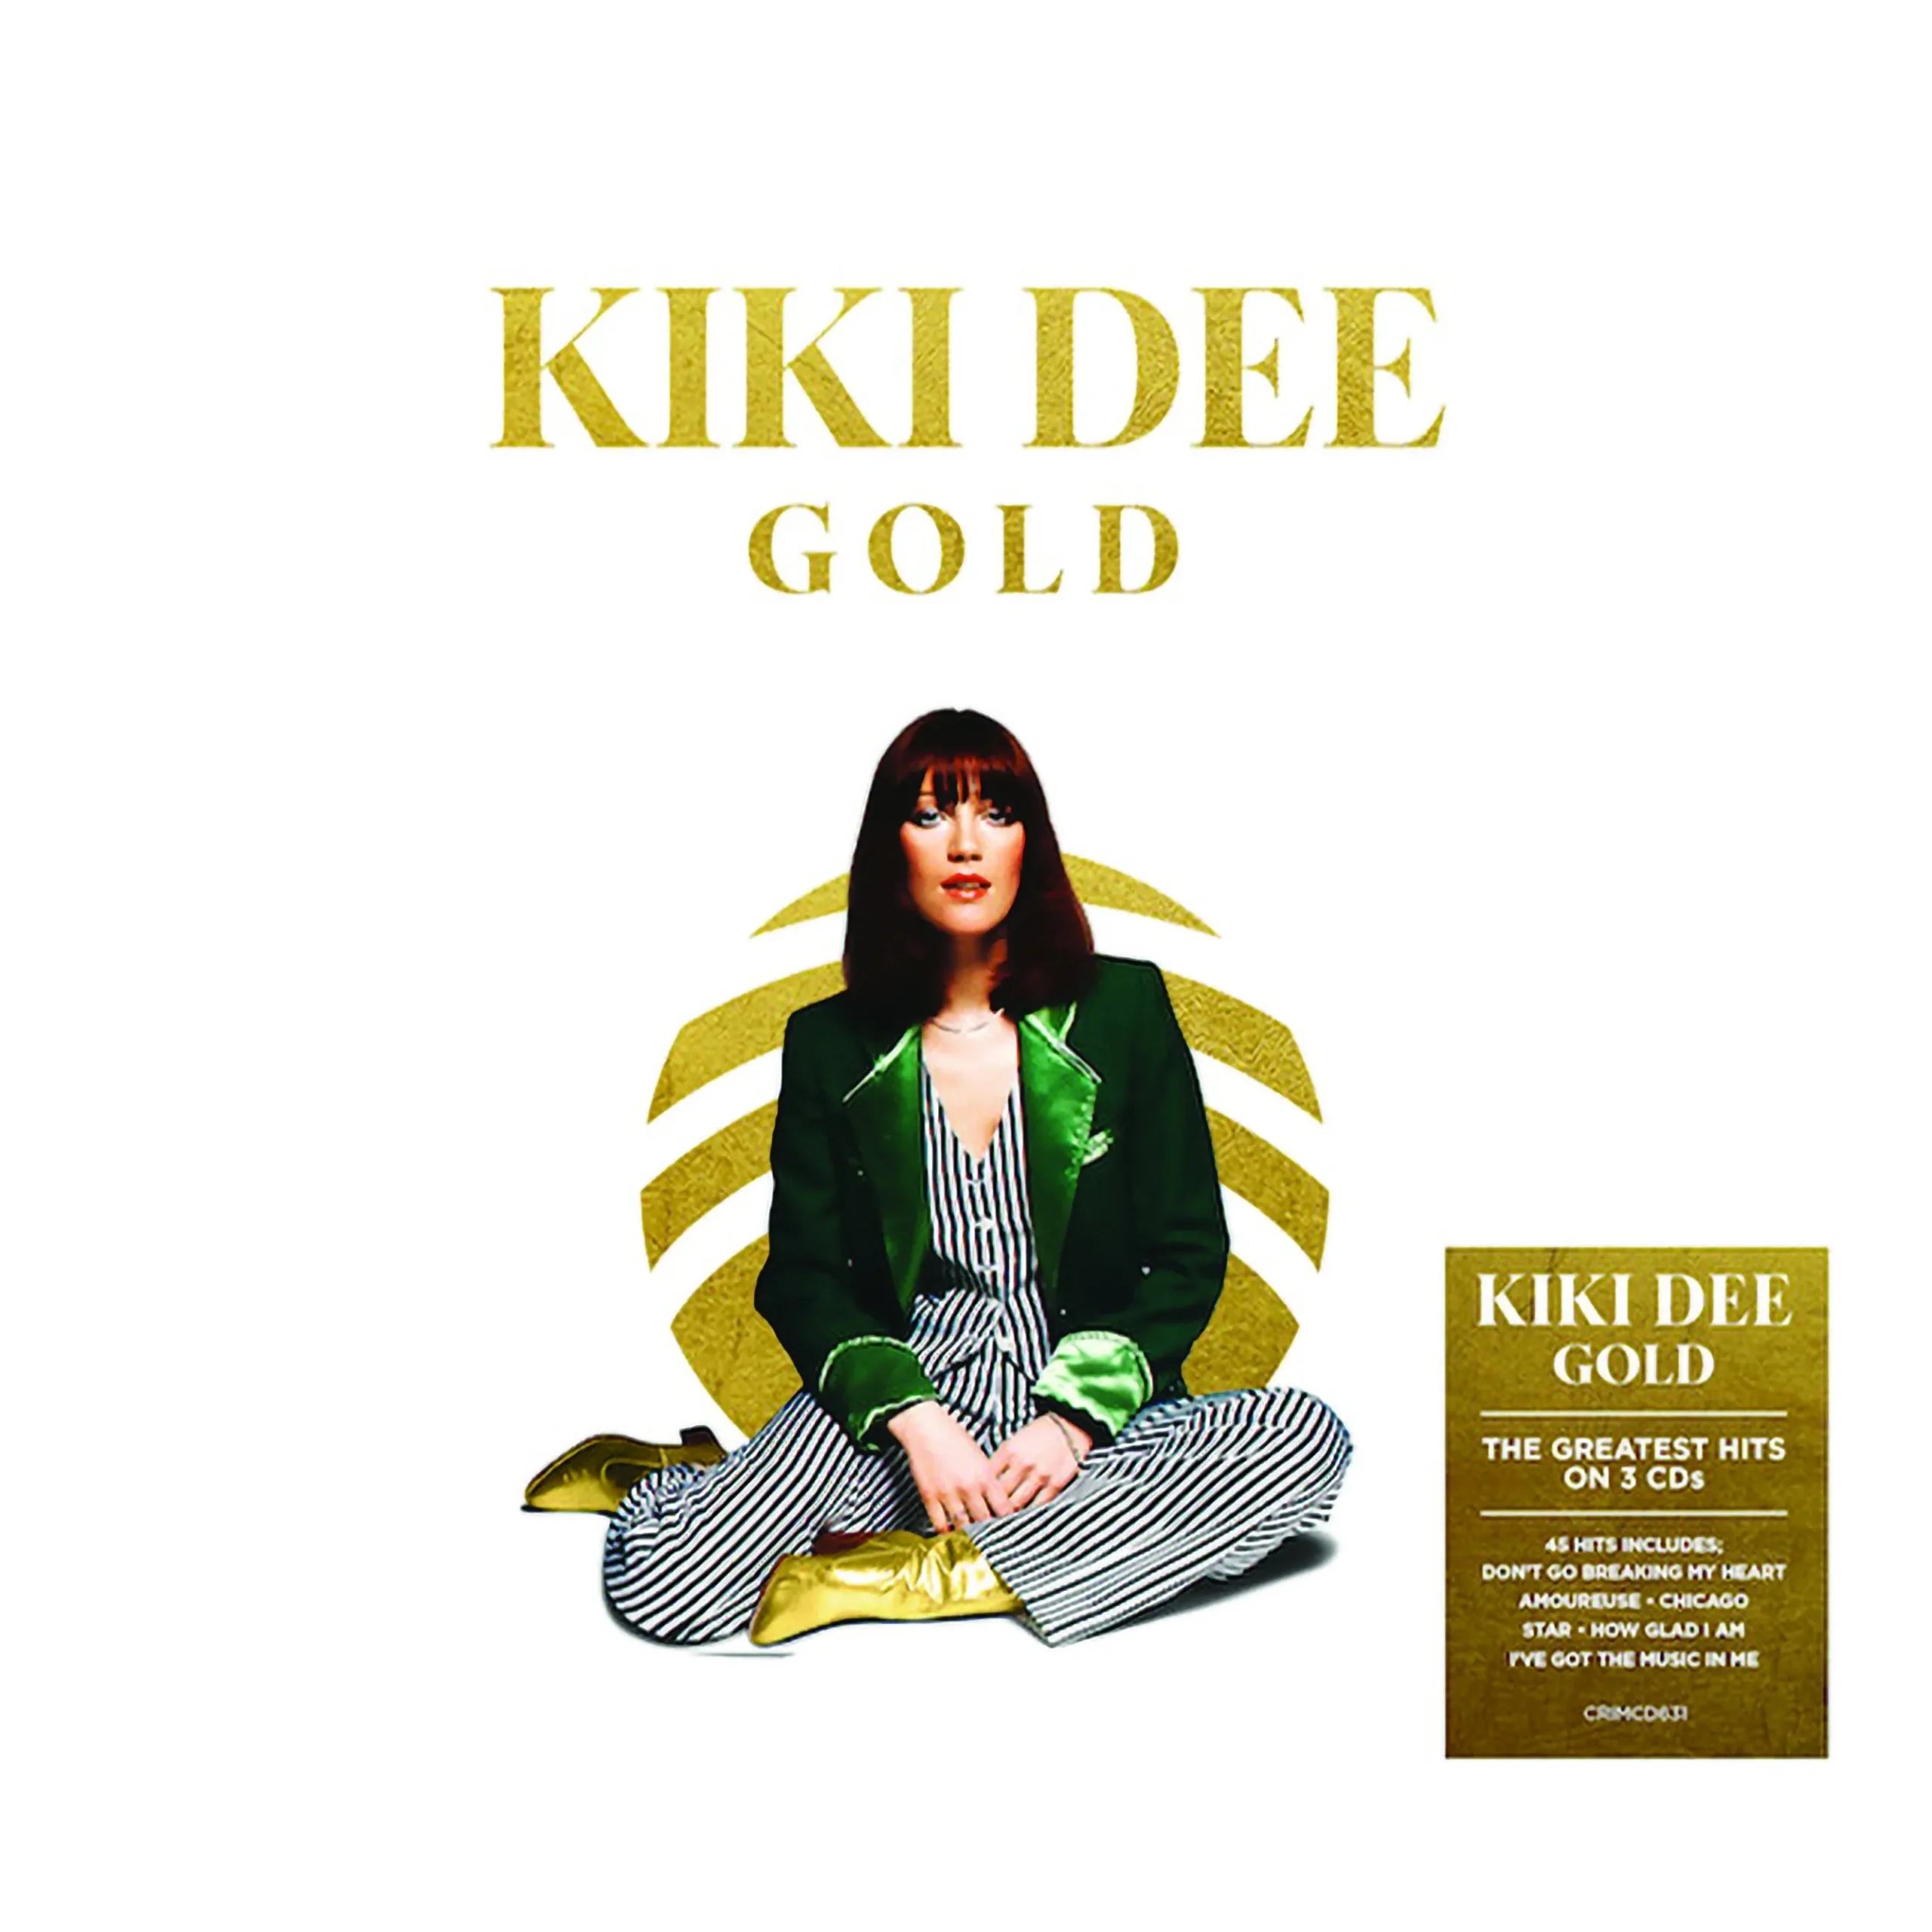 LGC2004-Kiki-Dee-Gold-1-1.webp